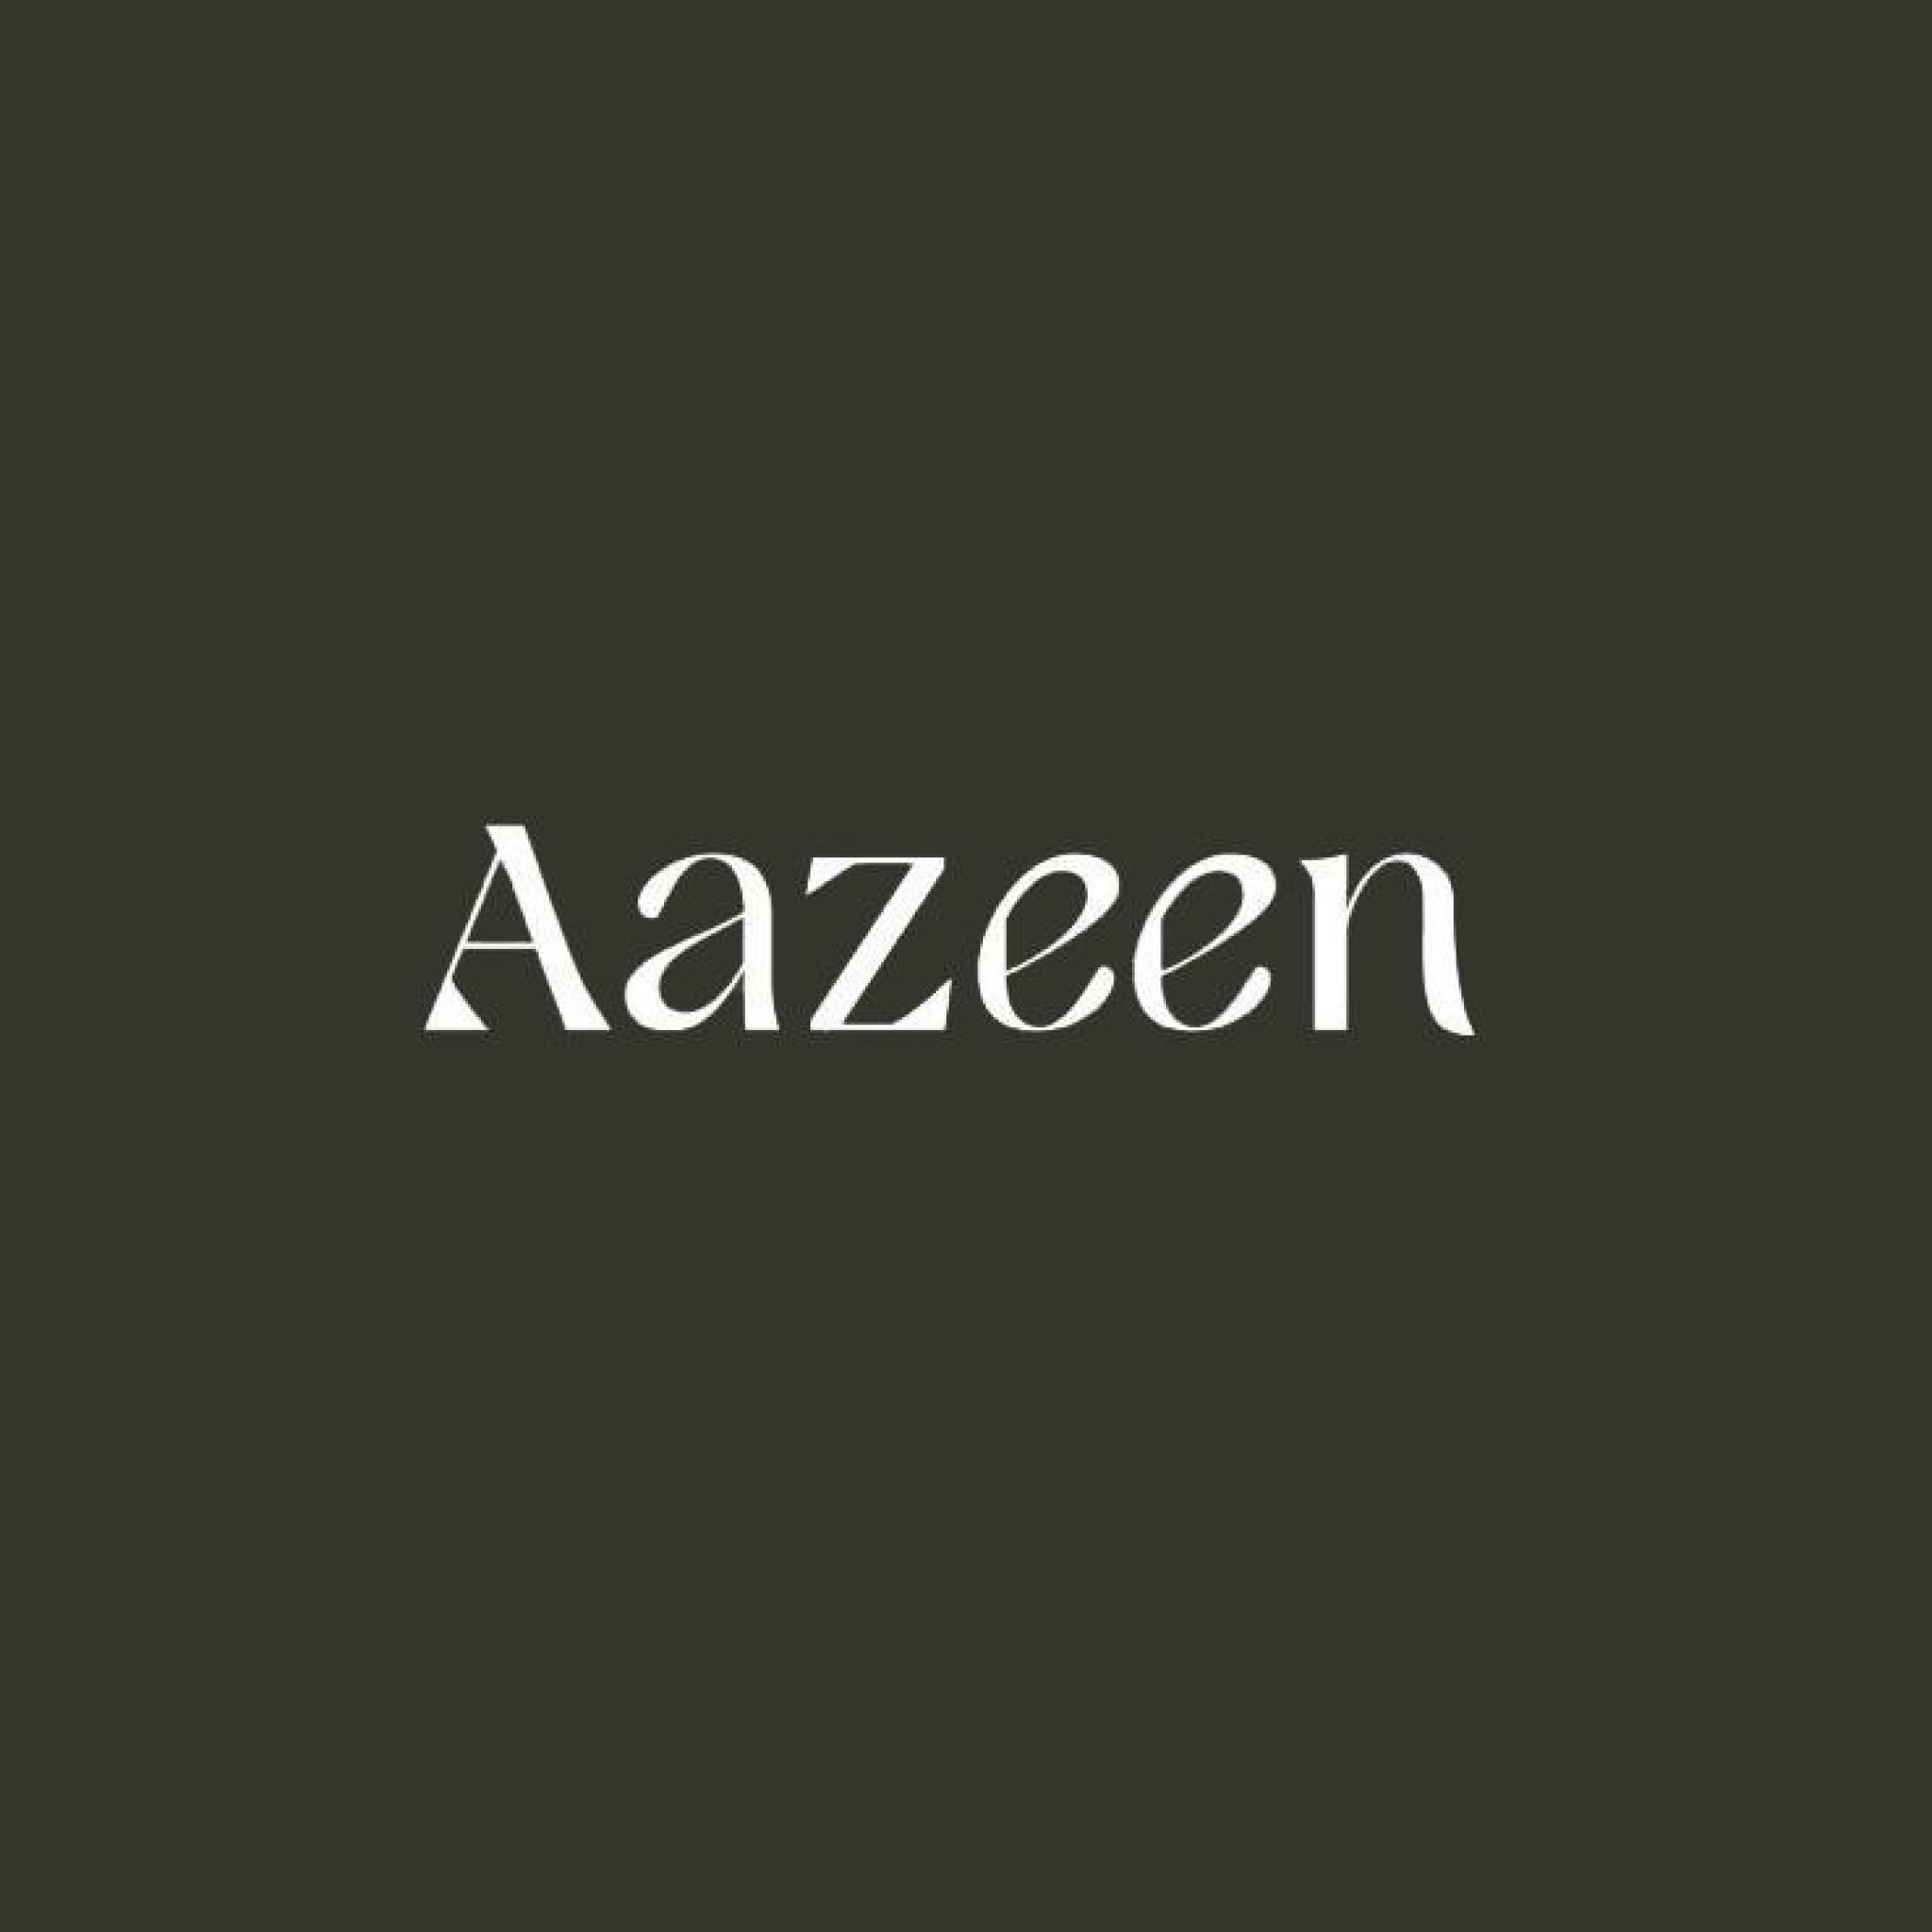 Aazeen Beauty Salon